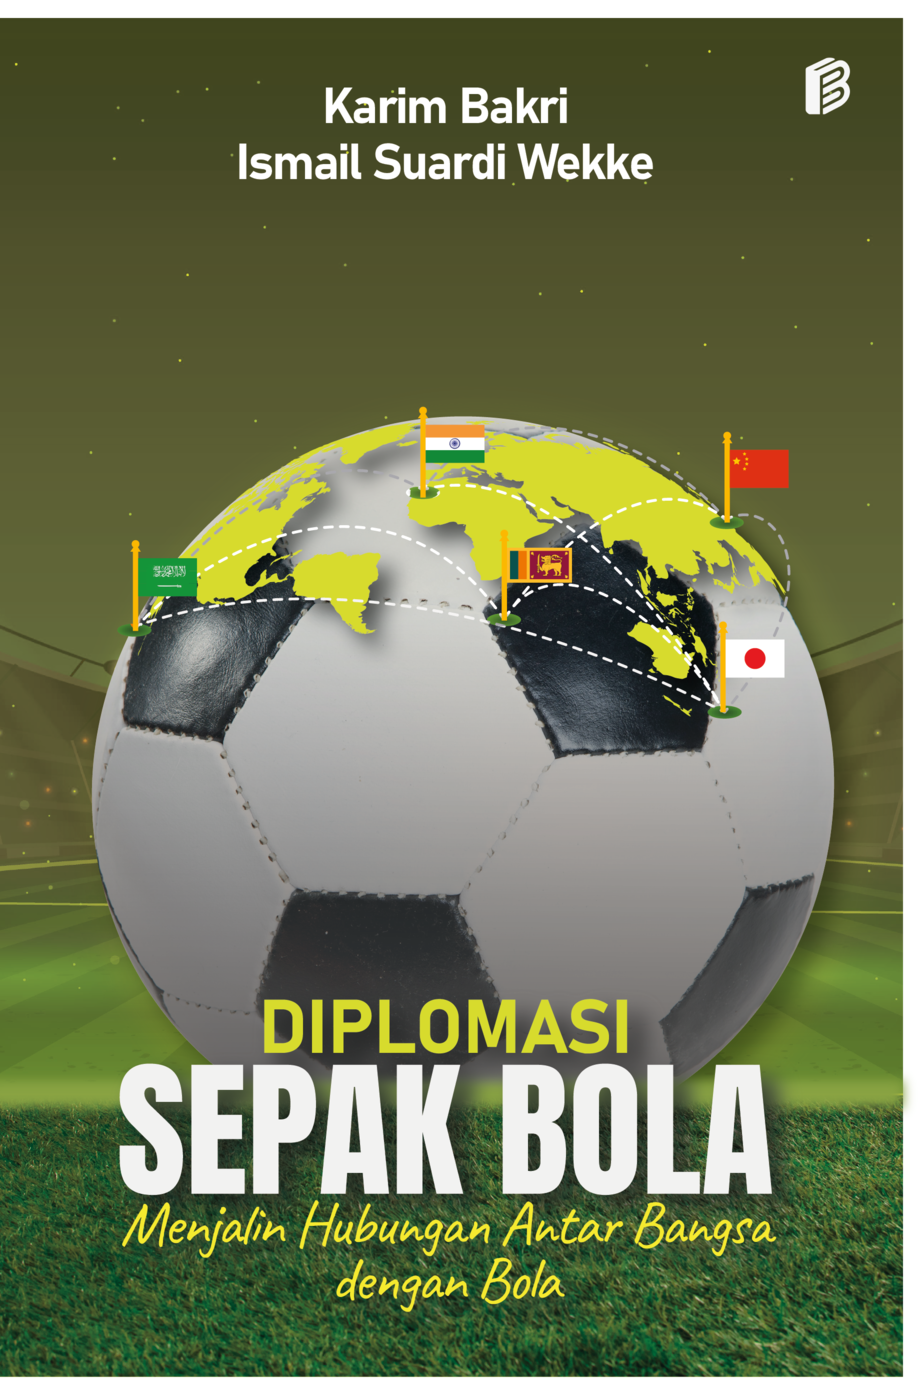 cover/(10-10-2022)diplomasi-sepak-bola-menjalin-hubungan-antarbangsa-dengan-bola.png